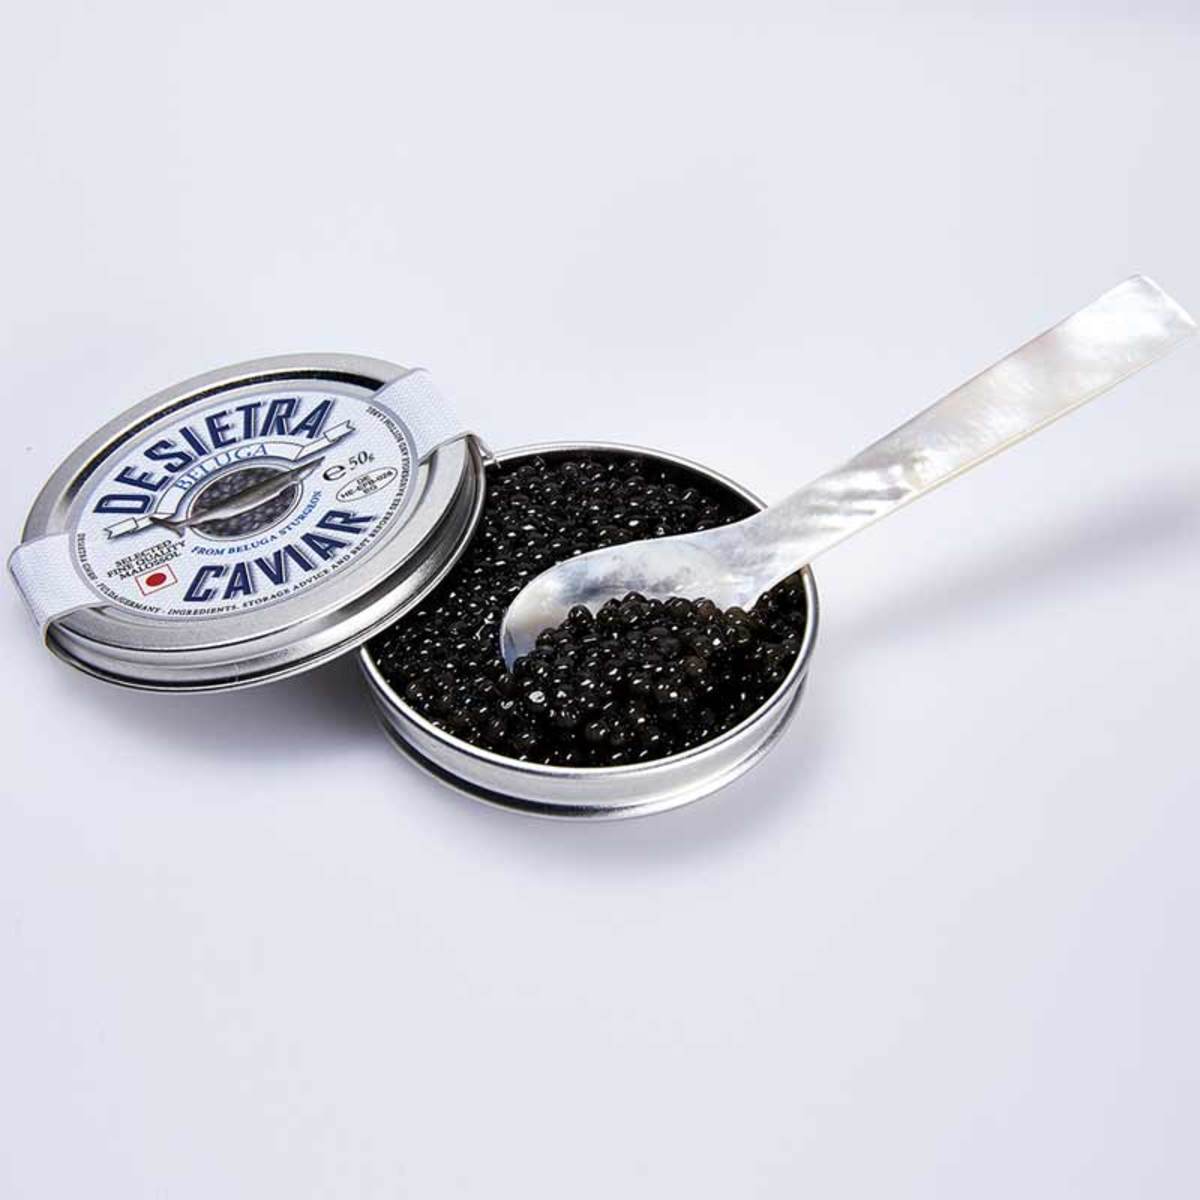 Desietra Beluga Caviar from Beluga Sturgeon, 50g